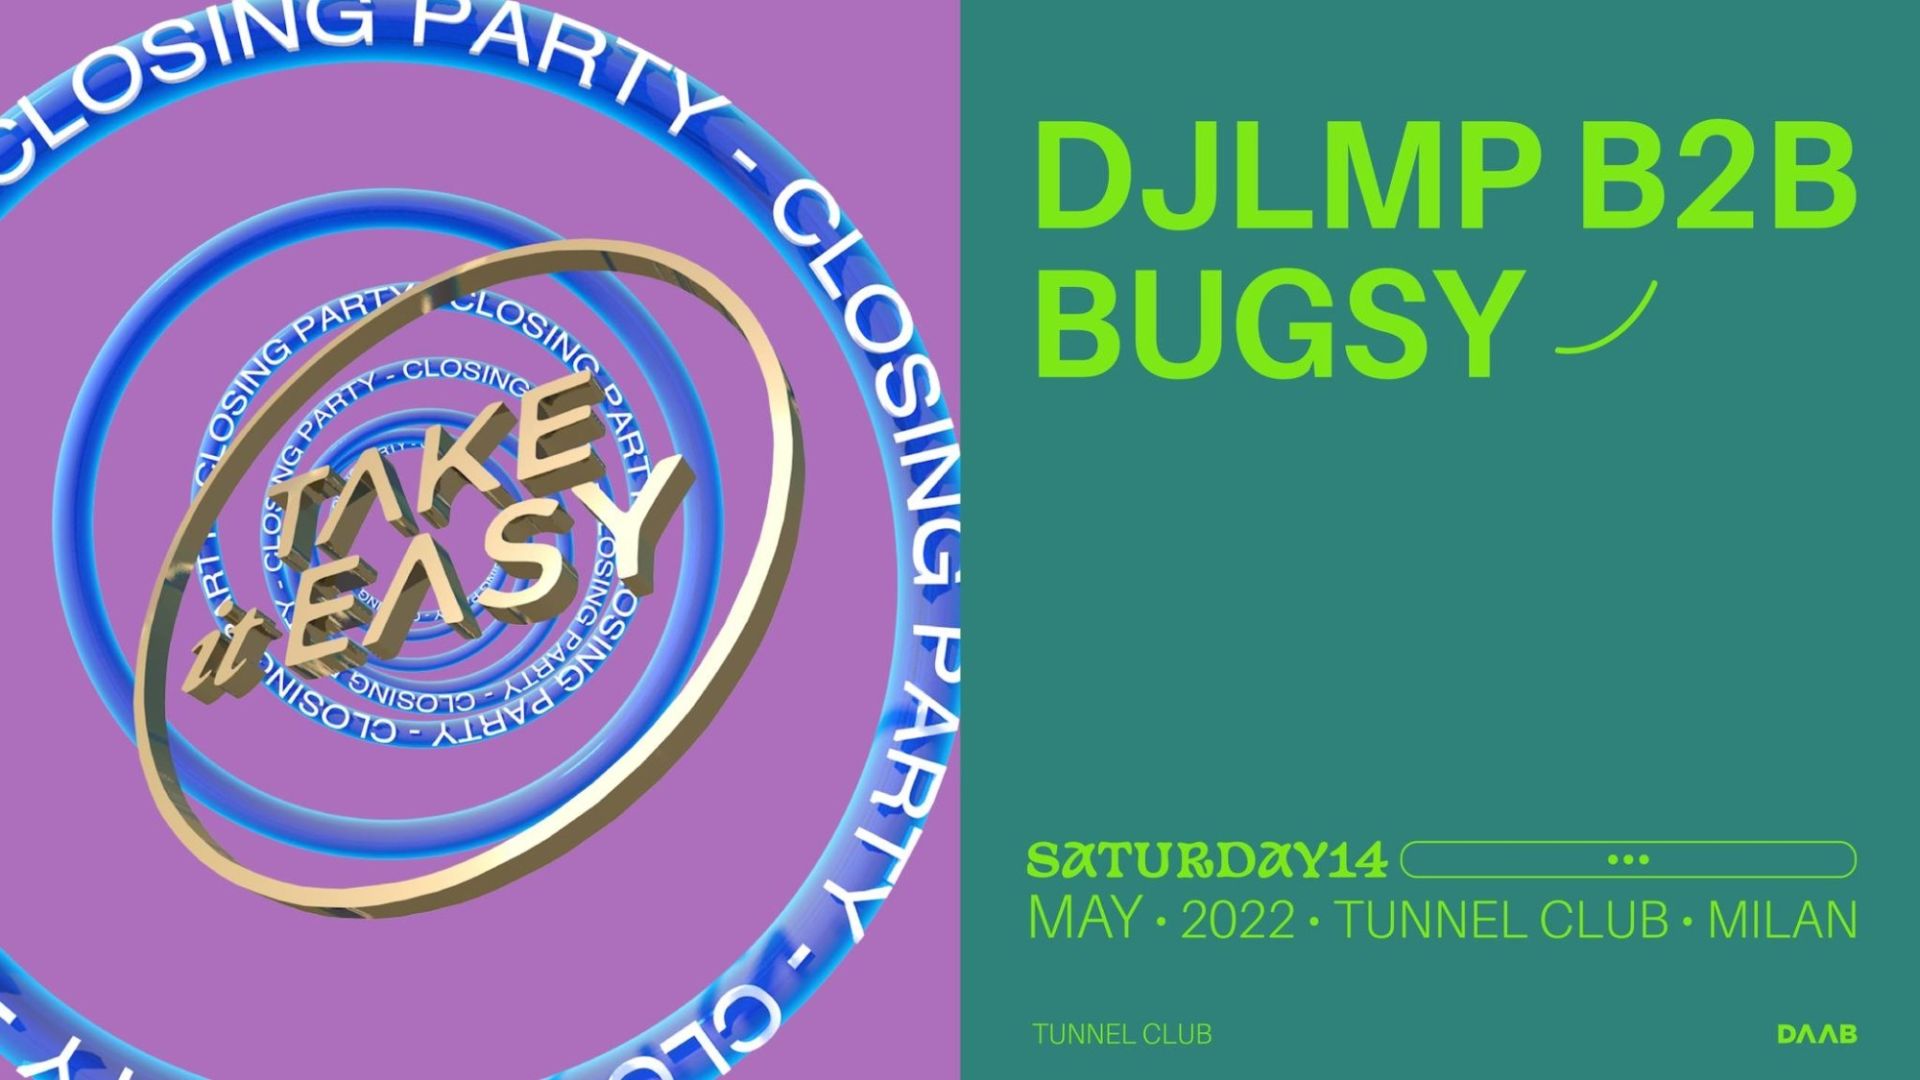 Take It Easy Closing Party: Bugsy b2b DJLMP